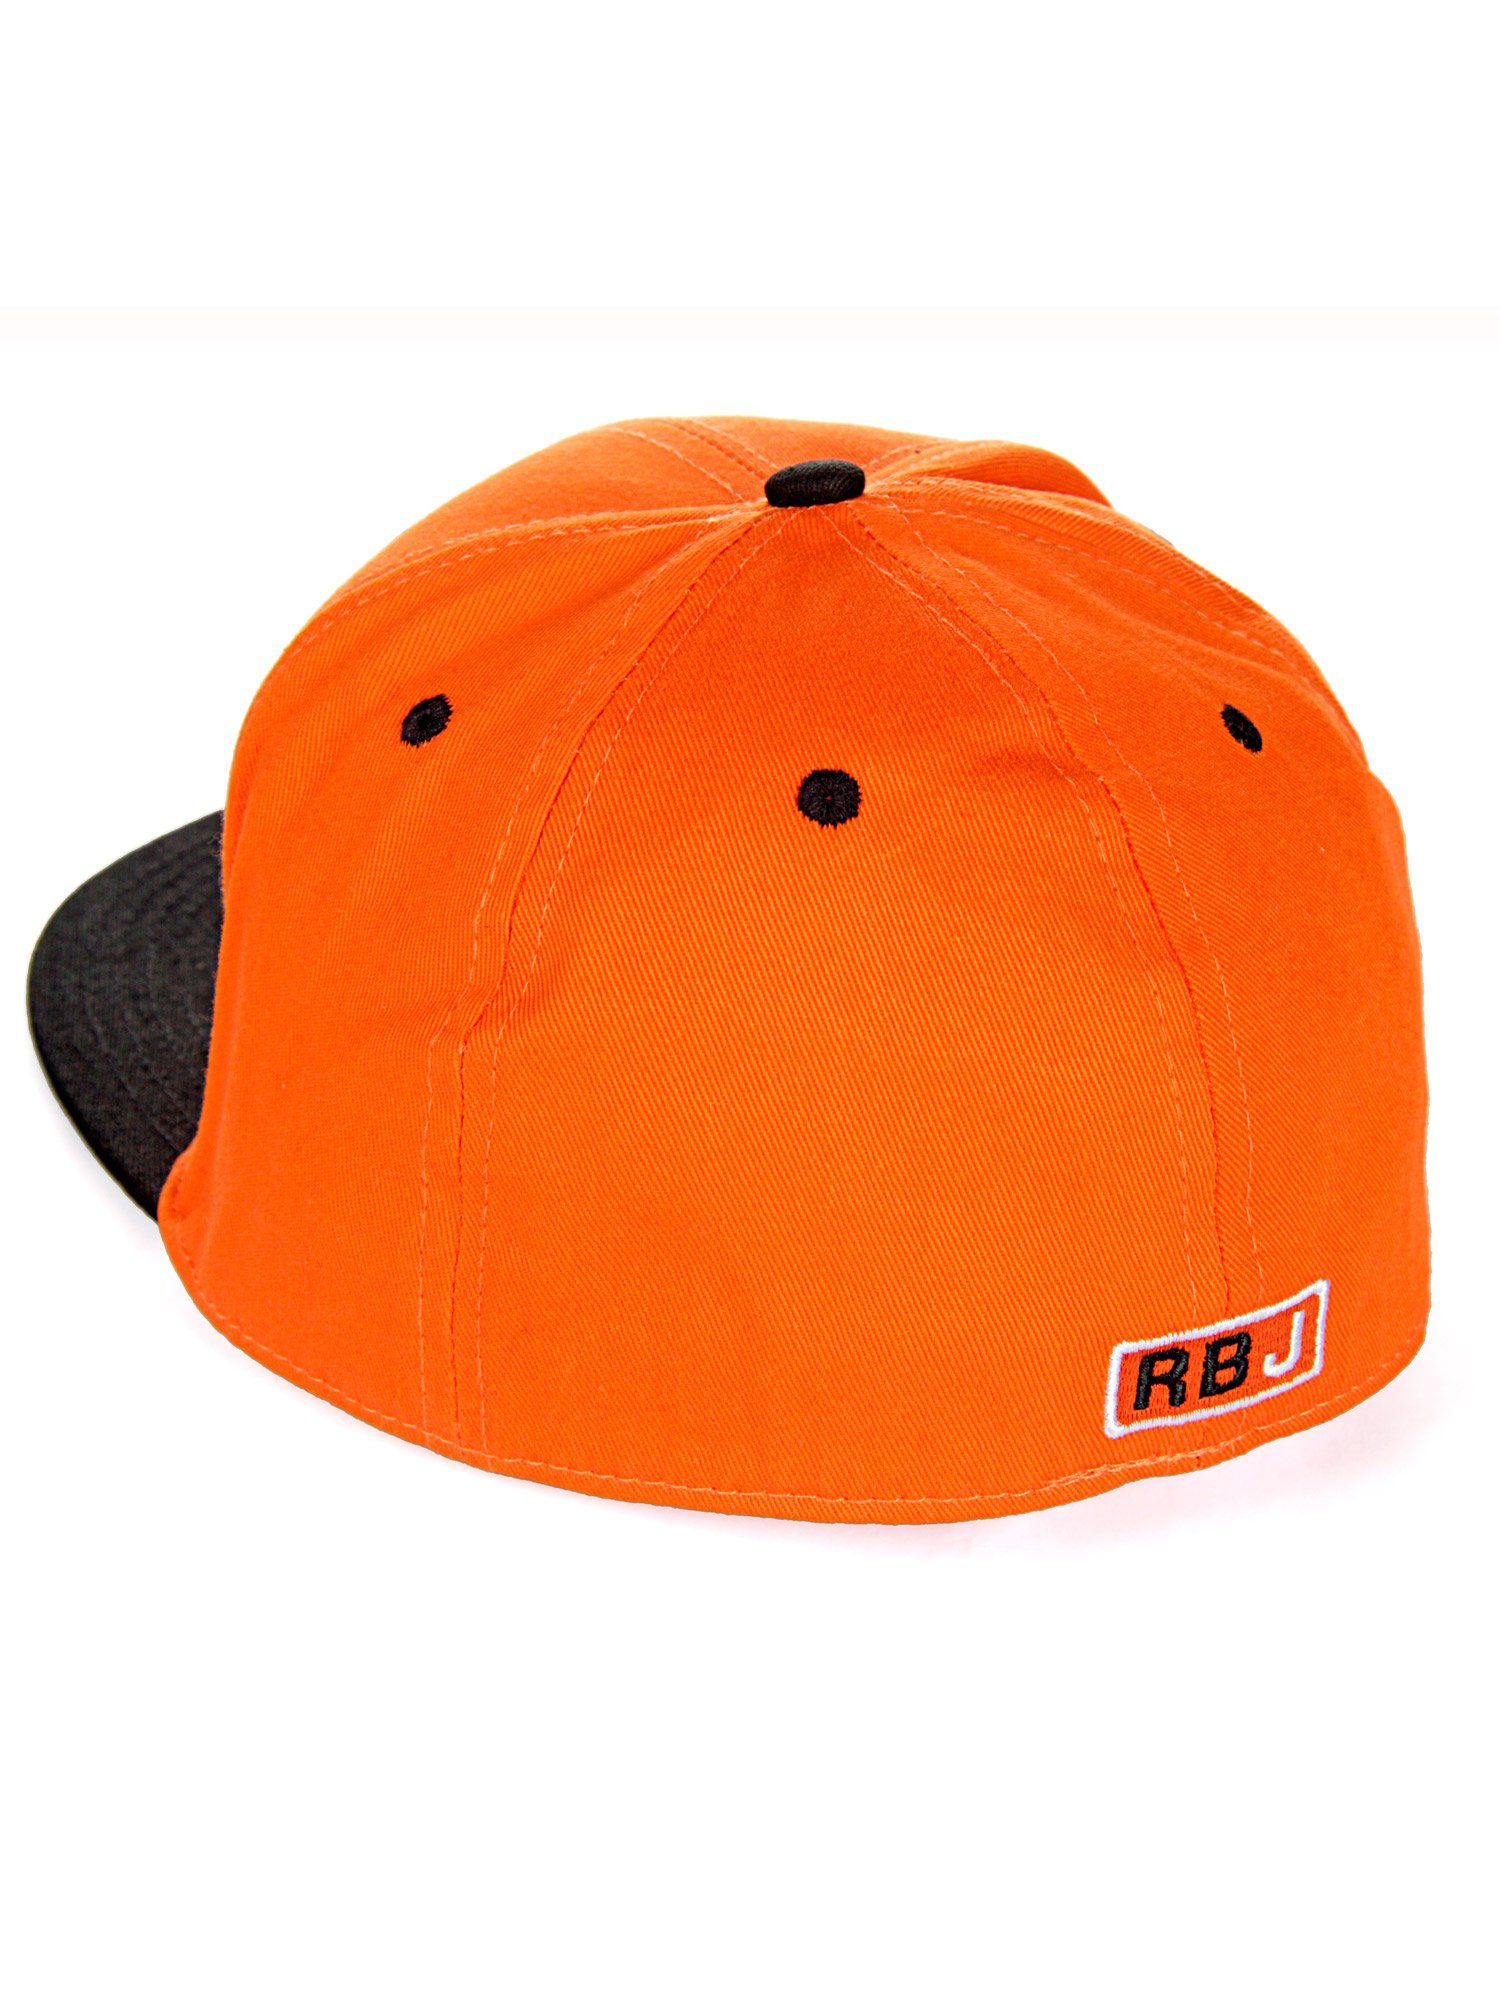 kontrastfarbigem Baseball RedBridge Durham Schirm orange-schwarz mit Cap